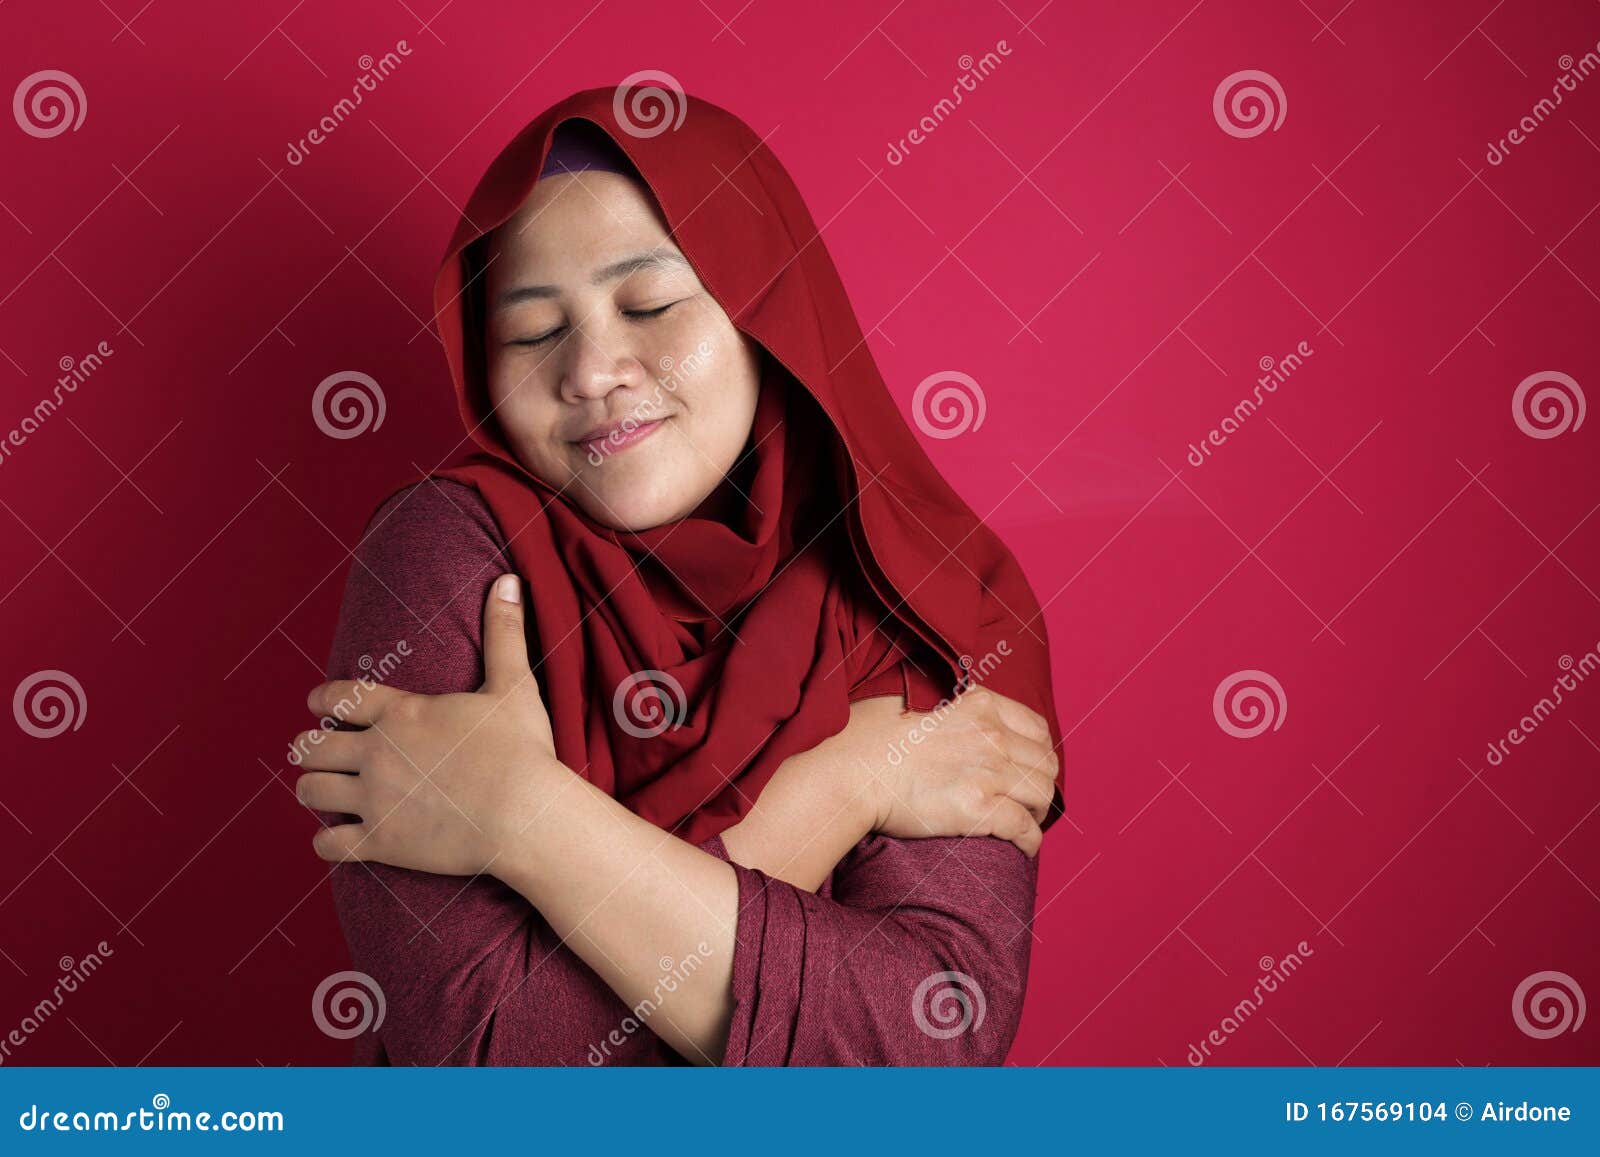 muslim woman hug her self